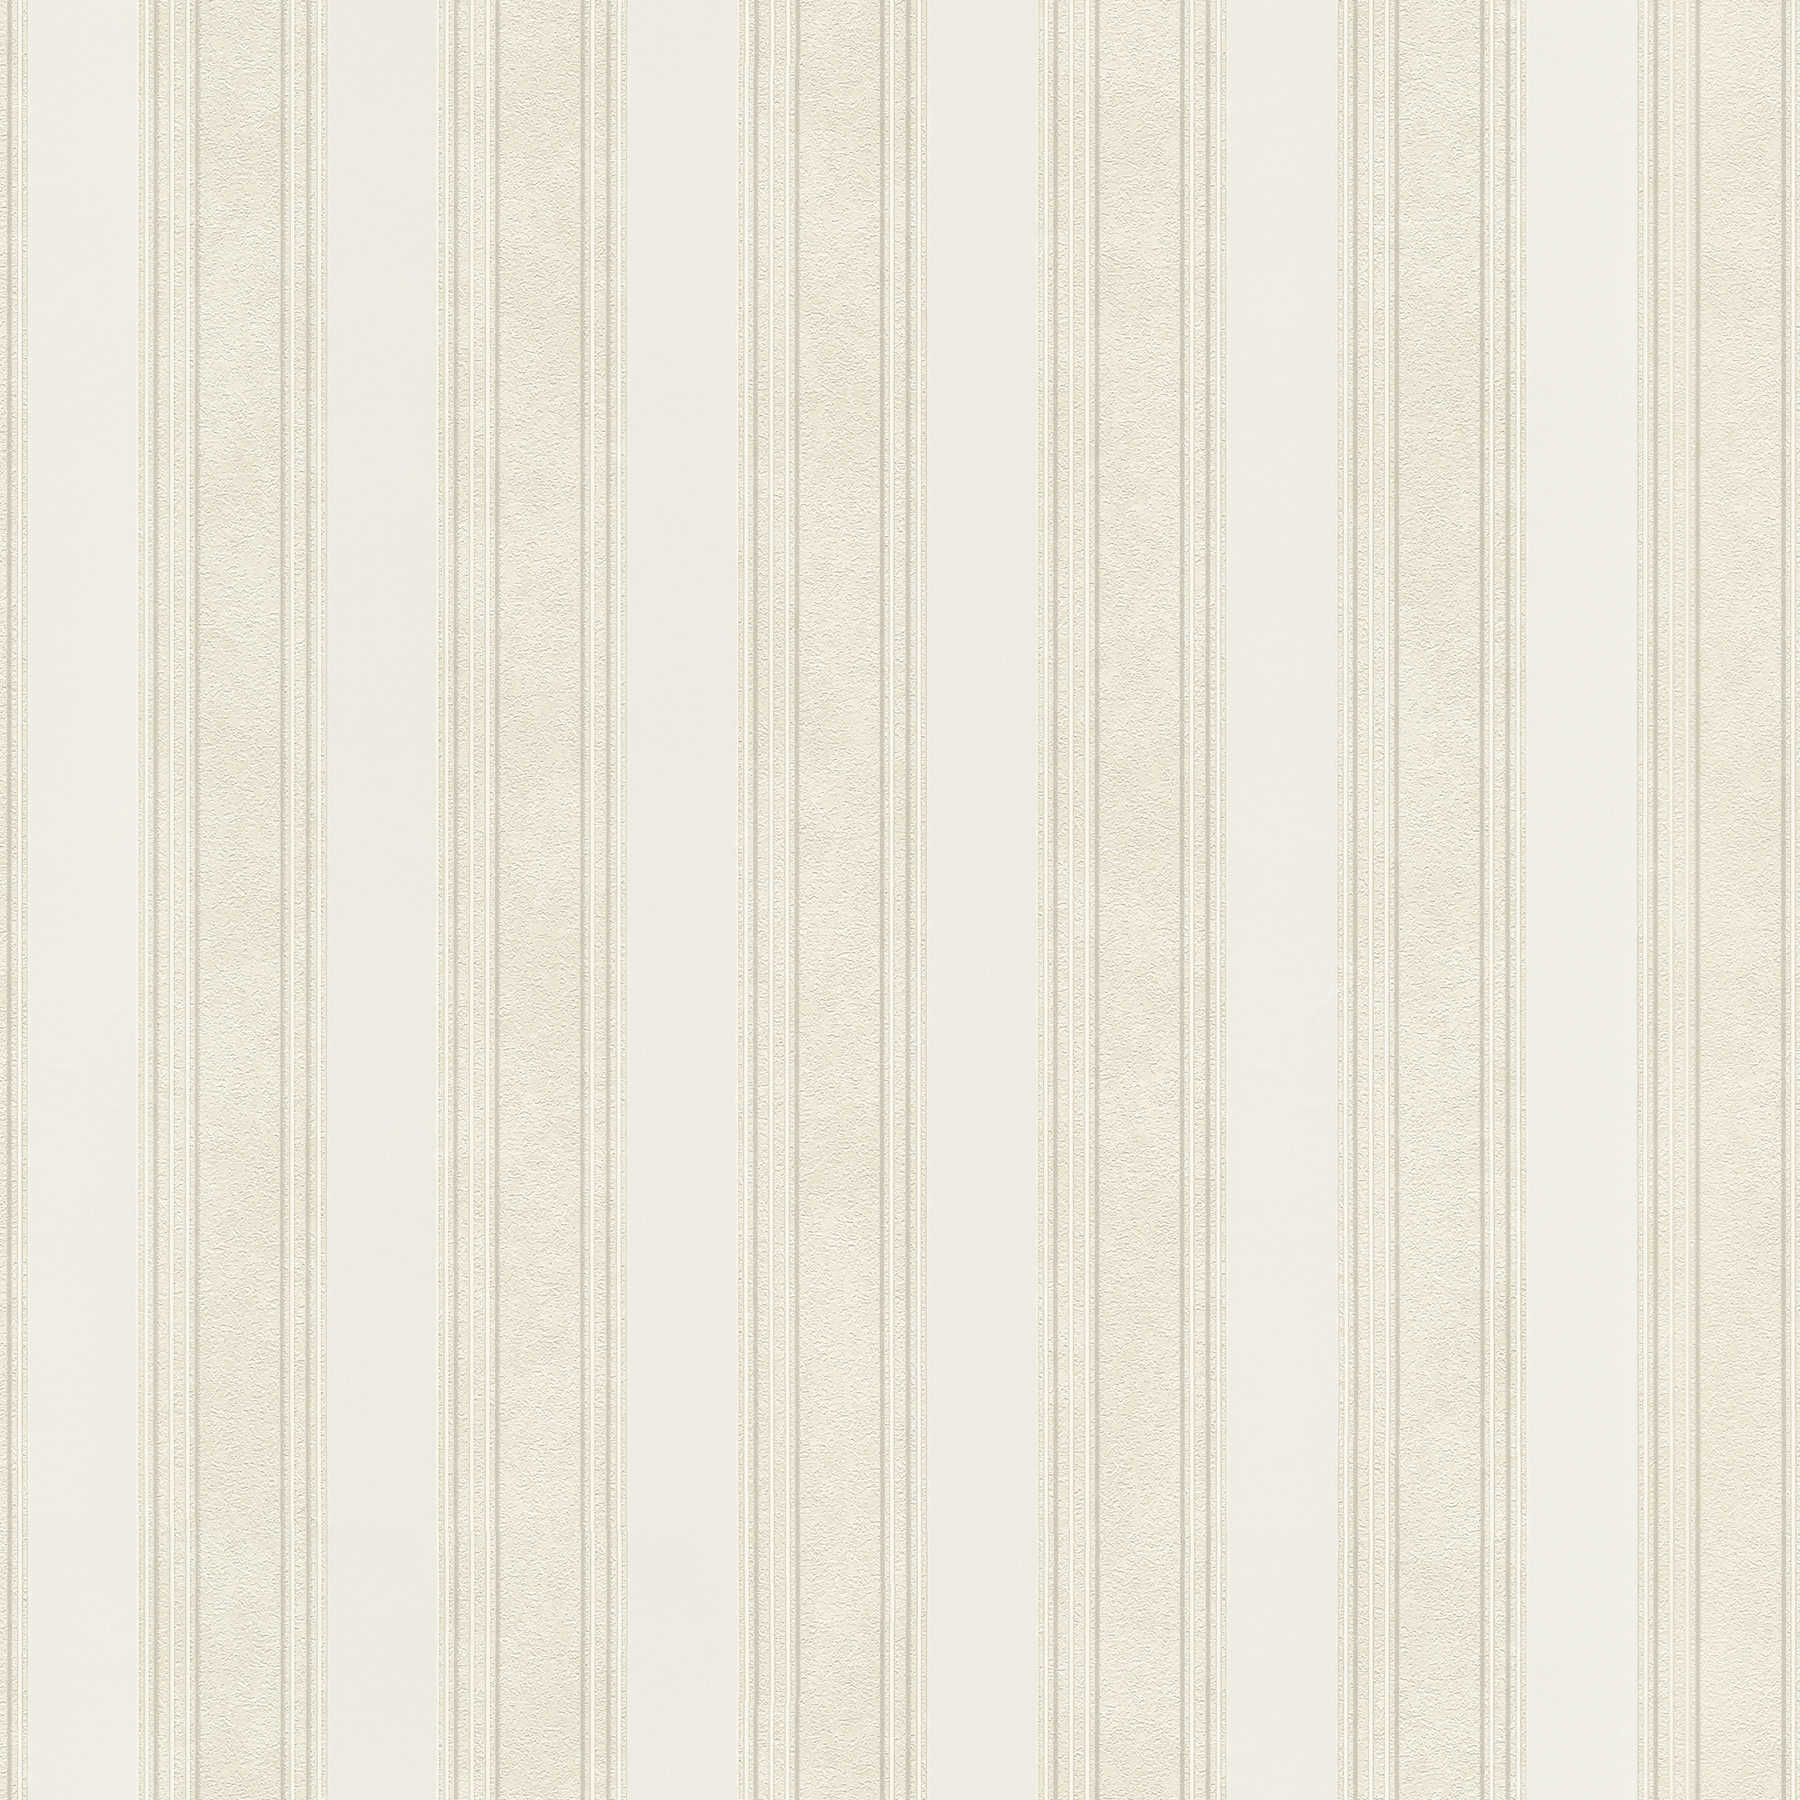 Classic style striped non-woven wallpaper - cream
